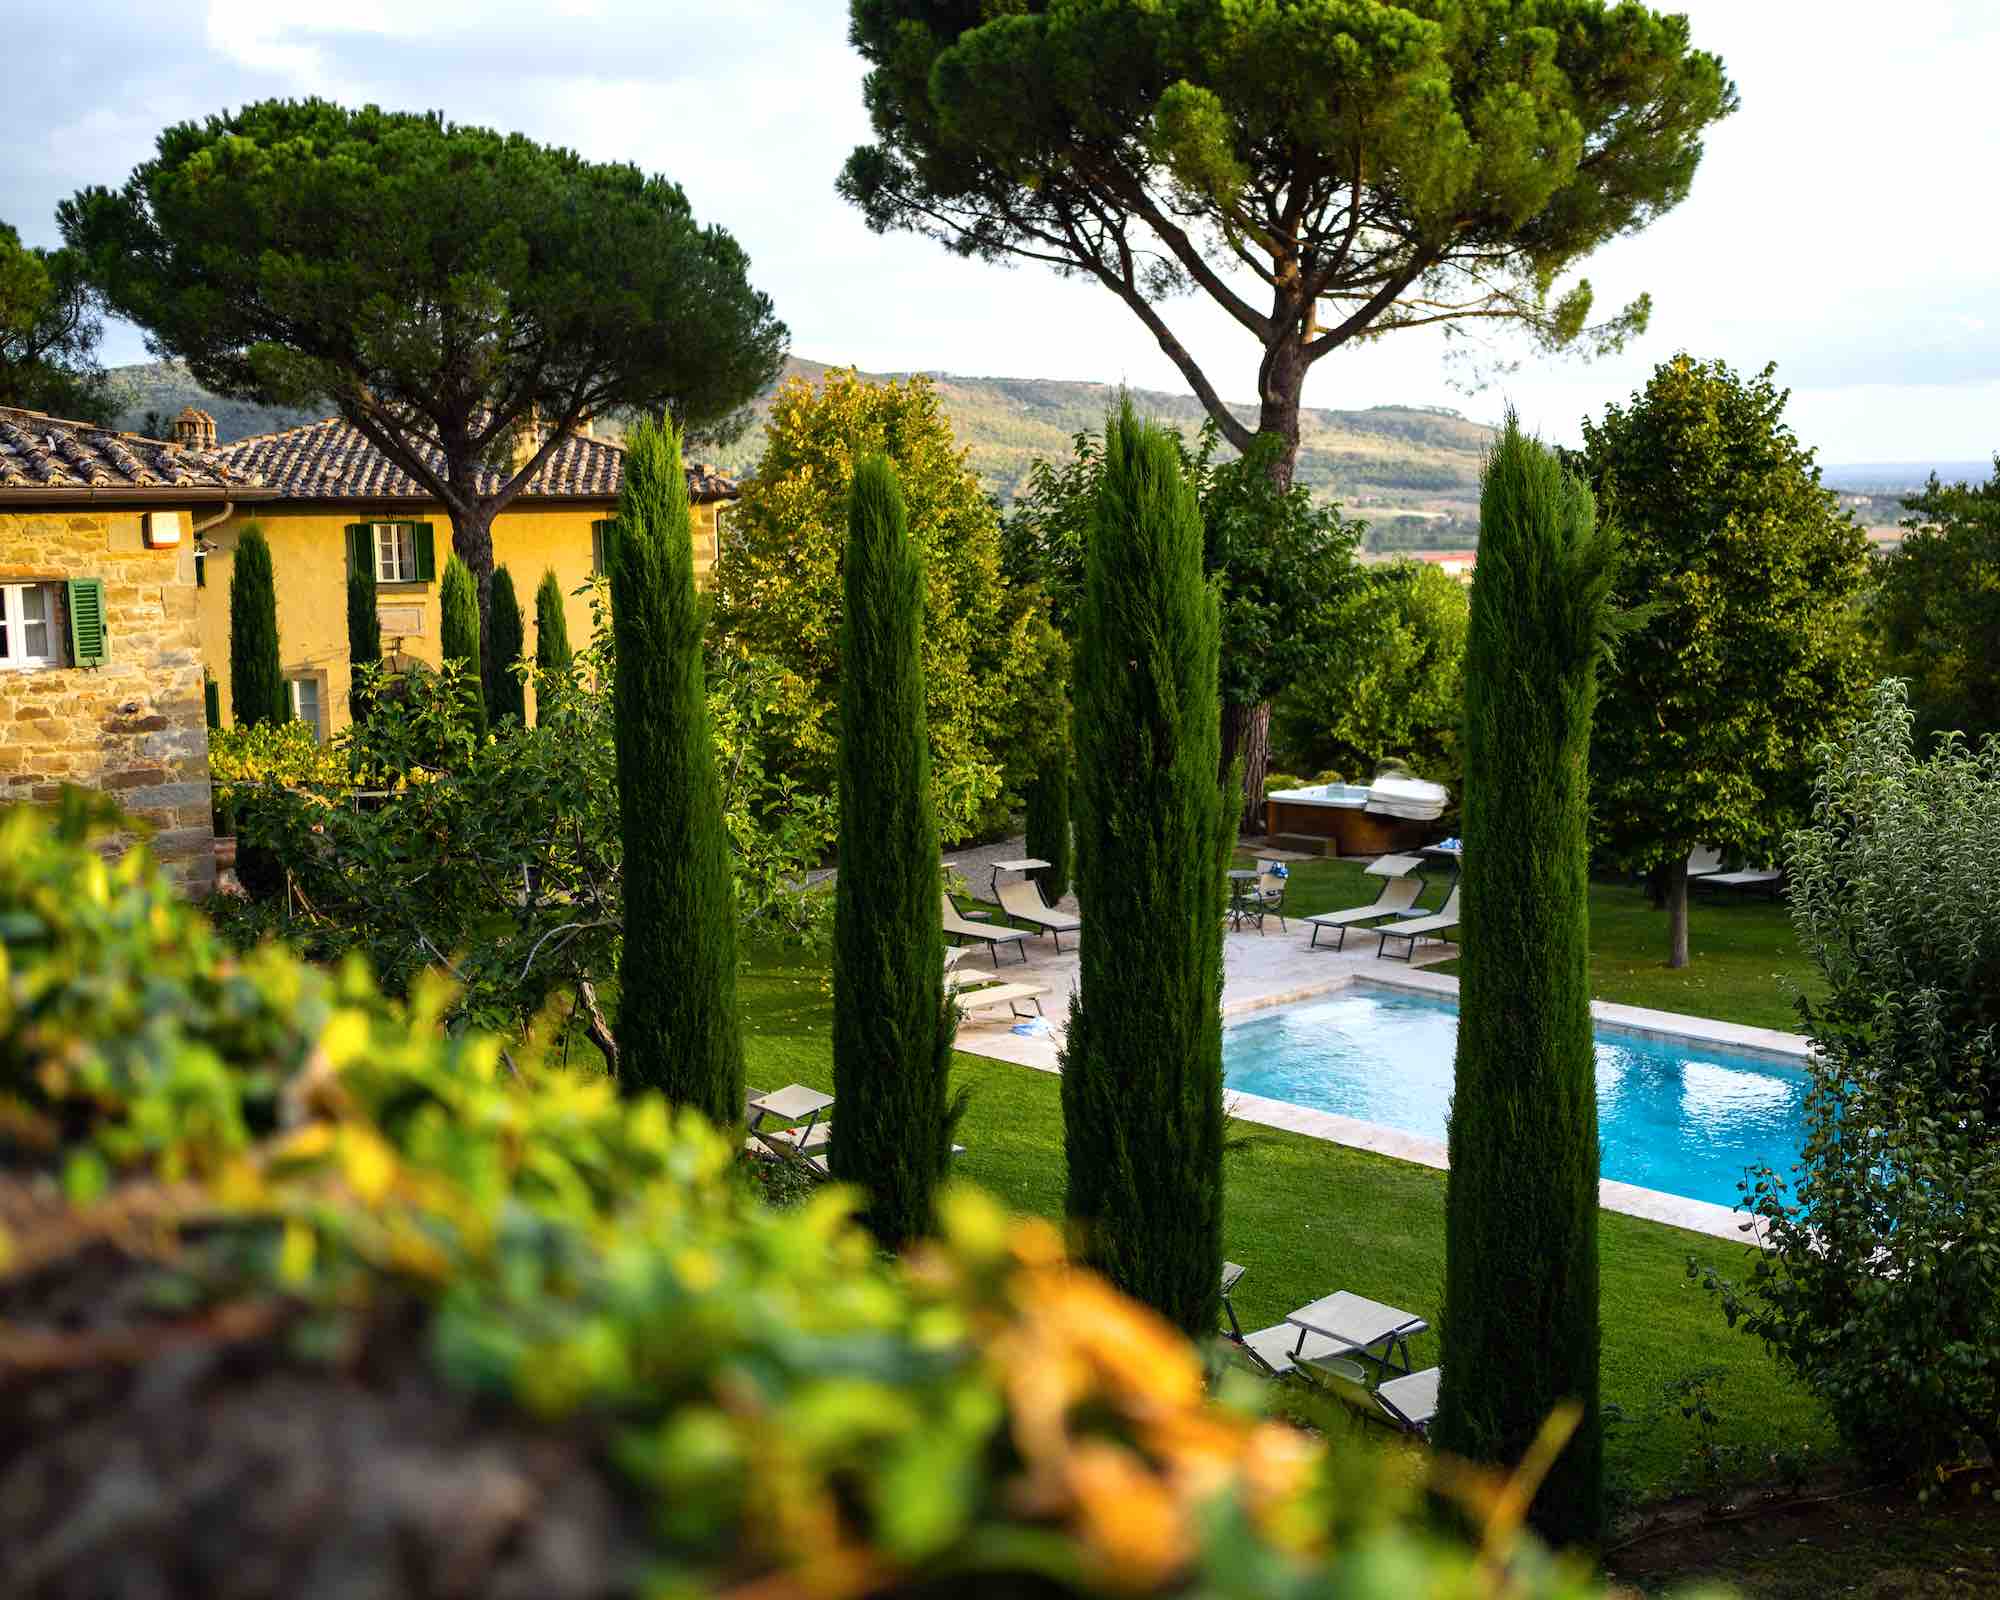 Struttura con piscina e idromassaggio in giardino in Toscana